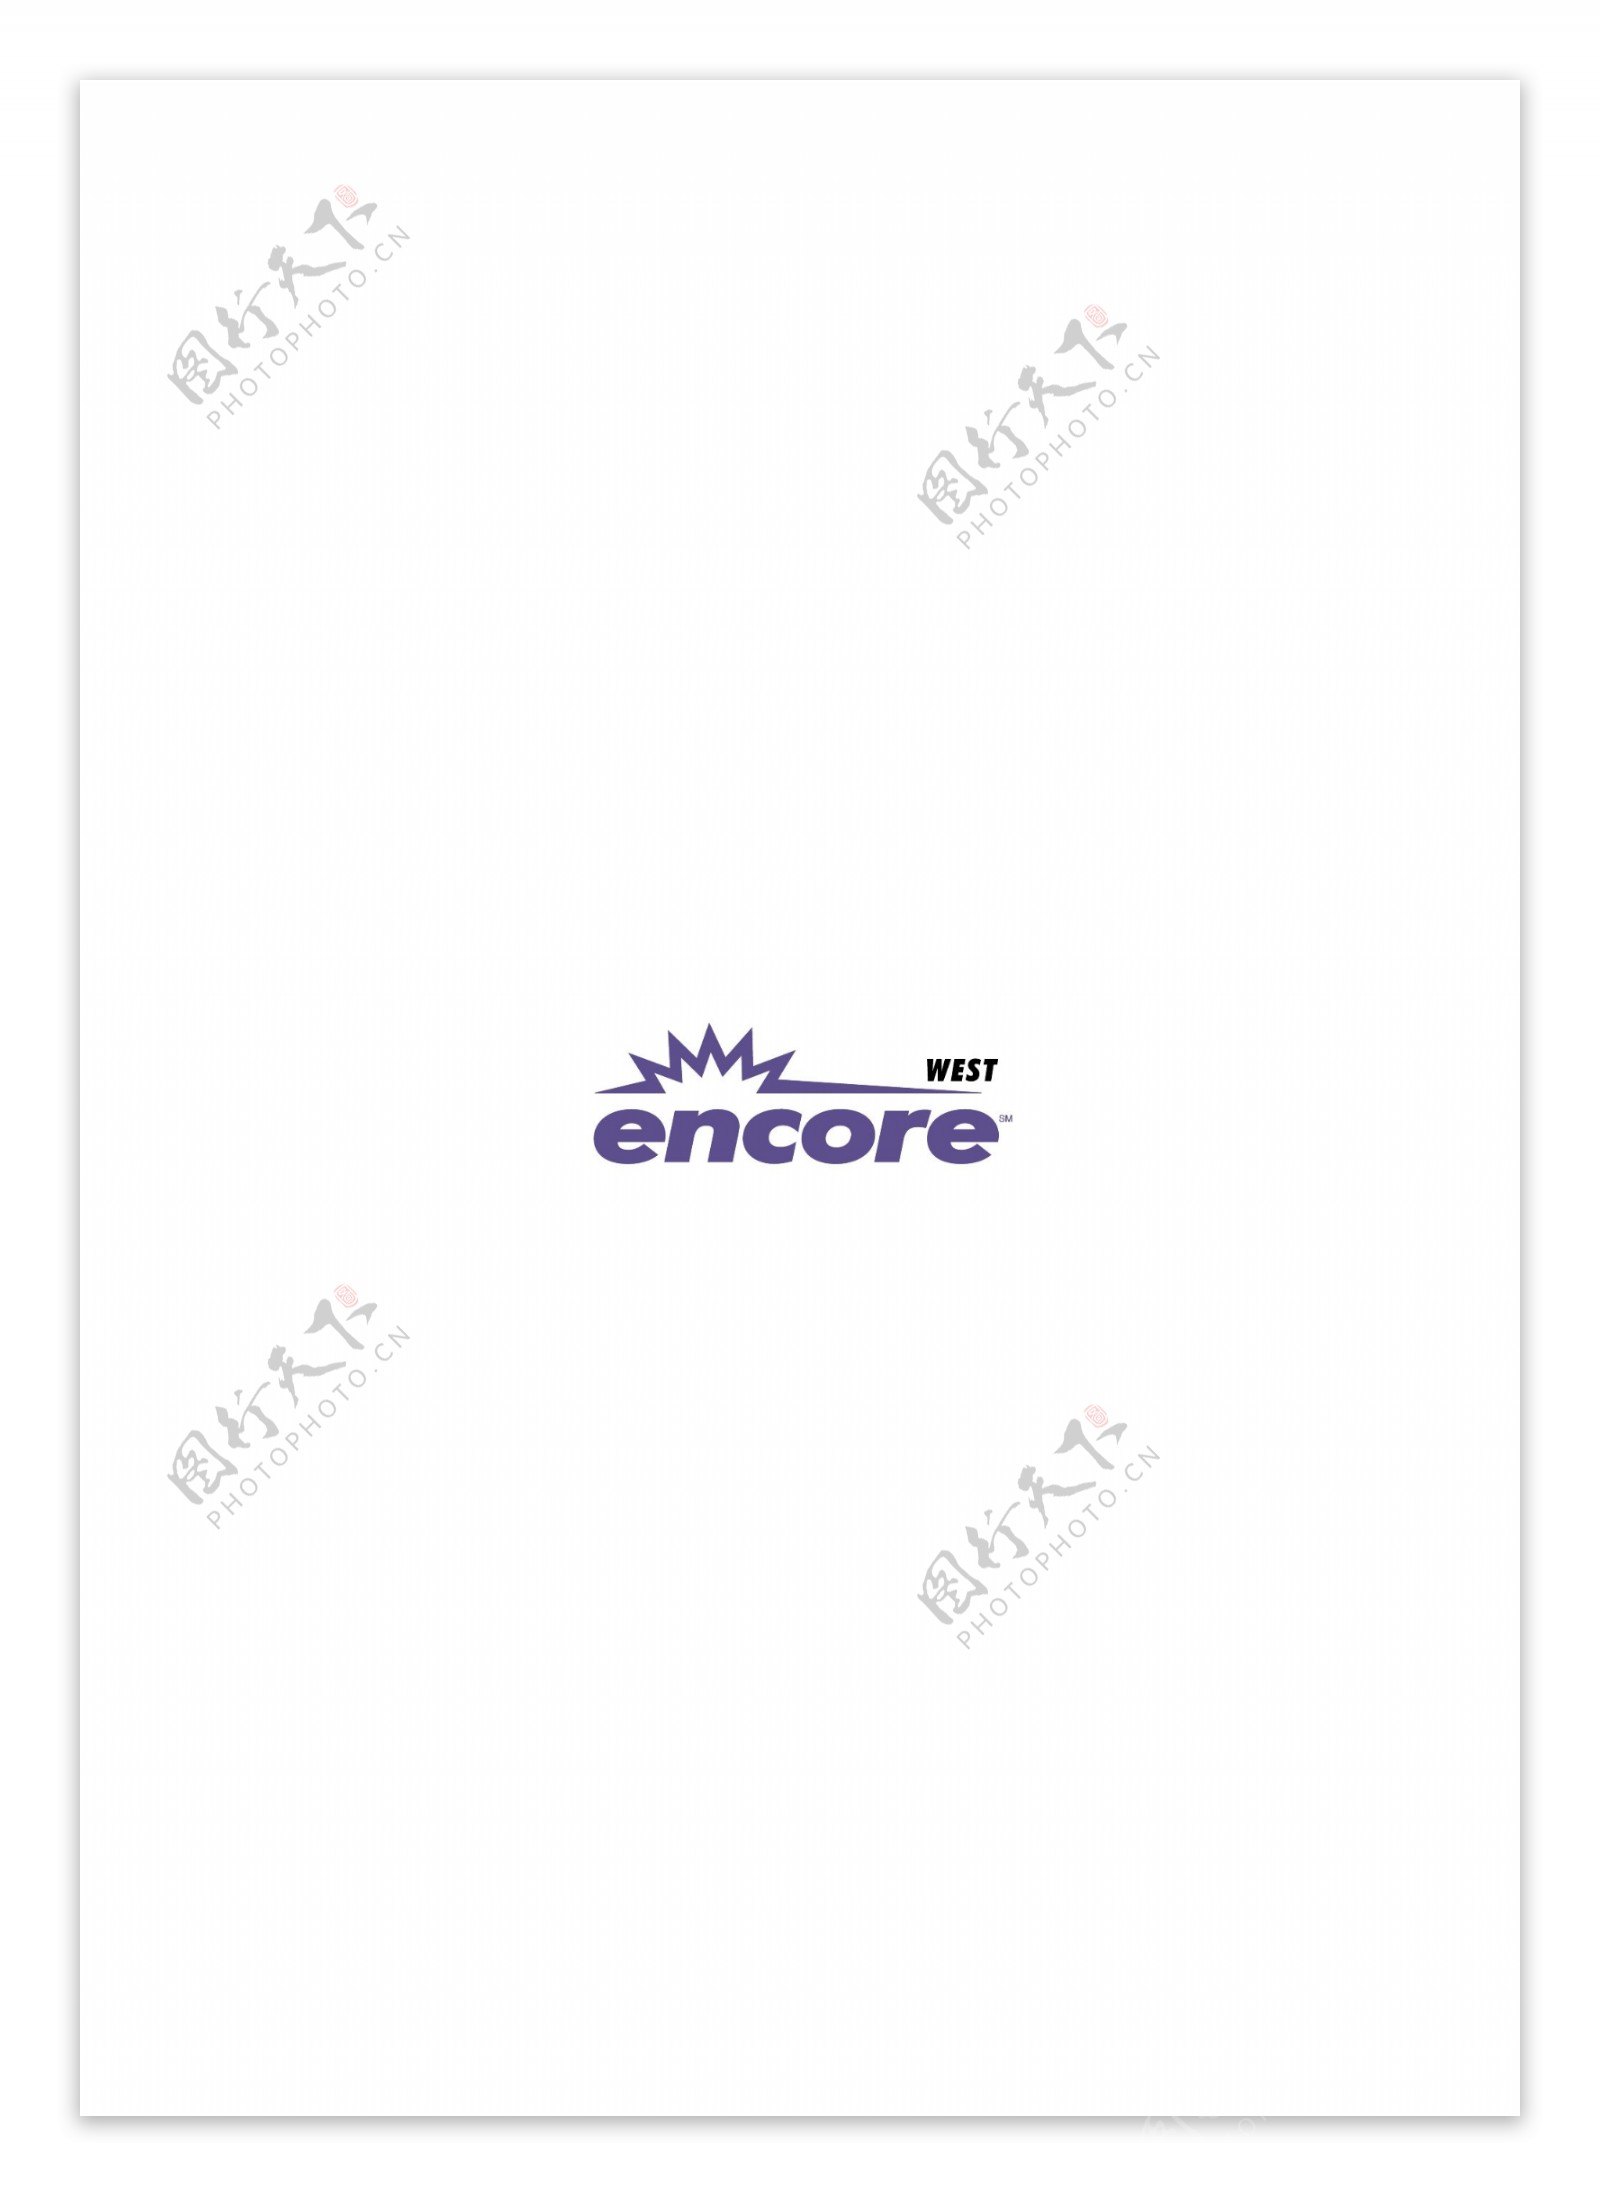 EncoreWestlogo设计欣赏EncoreWest传媒机构LOGO下载标志设计欣赏